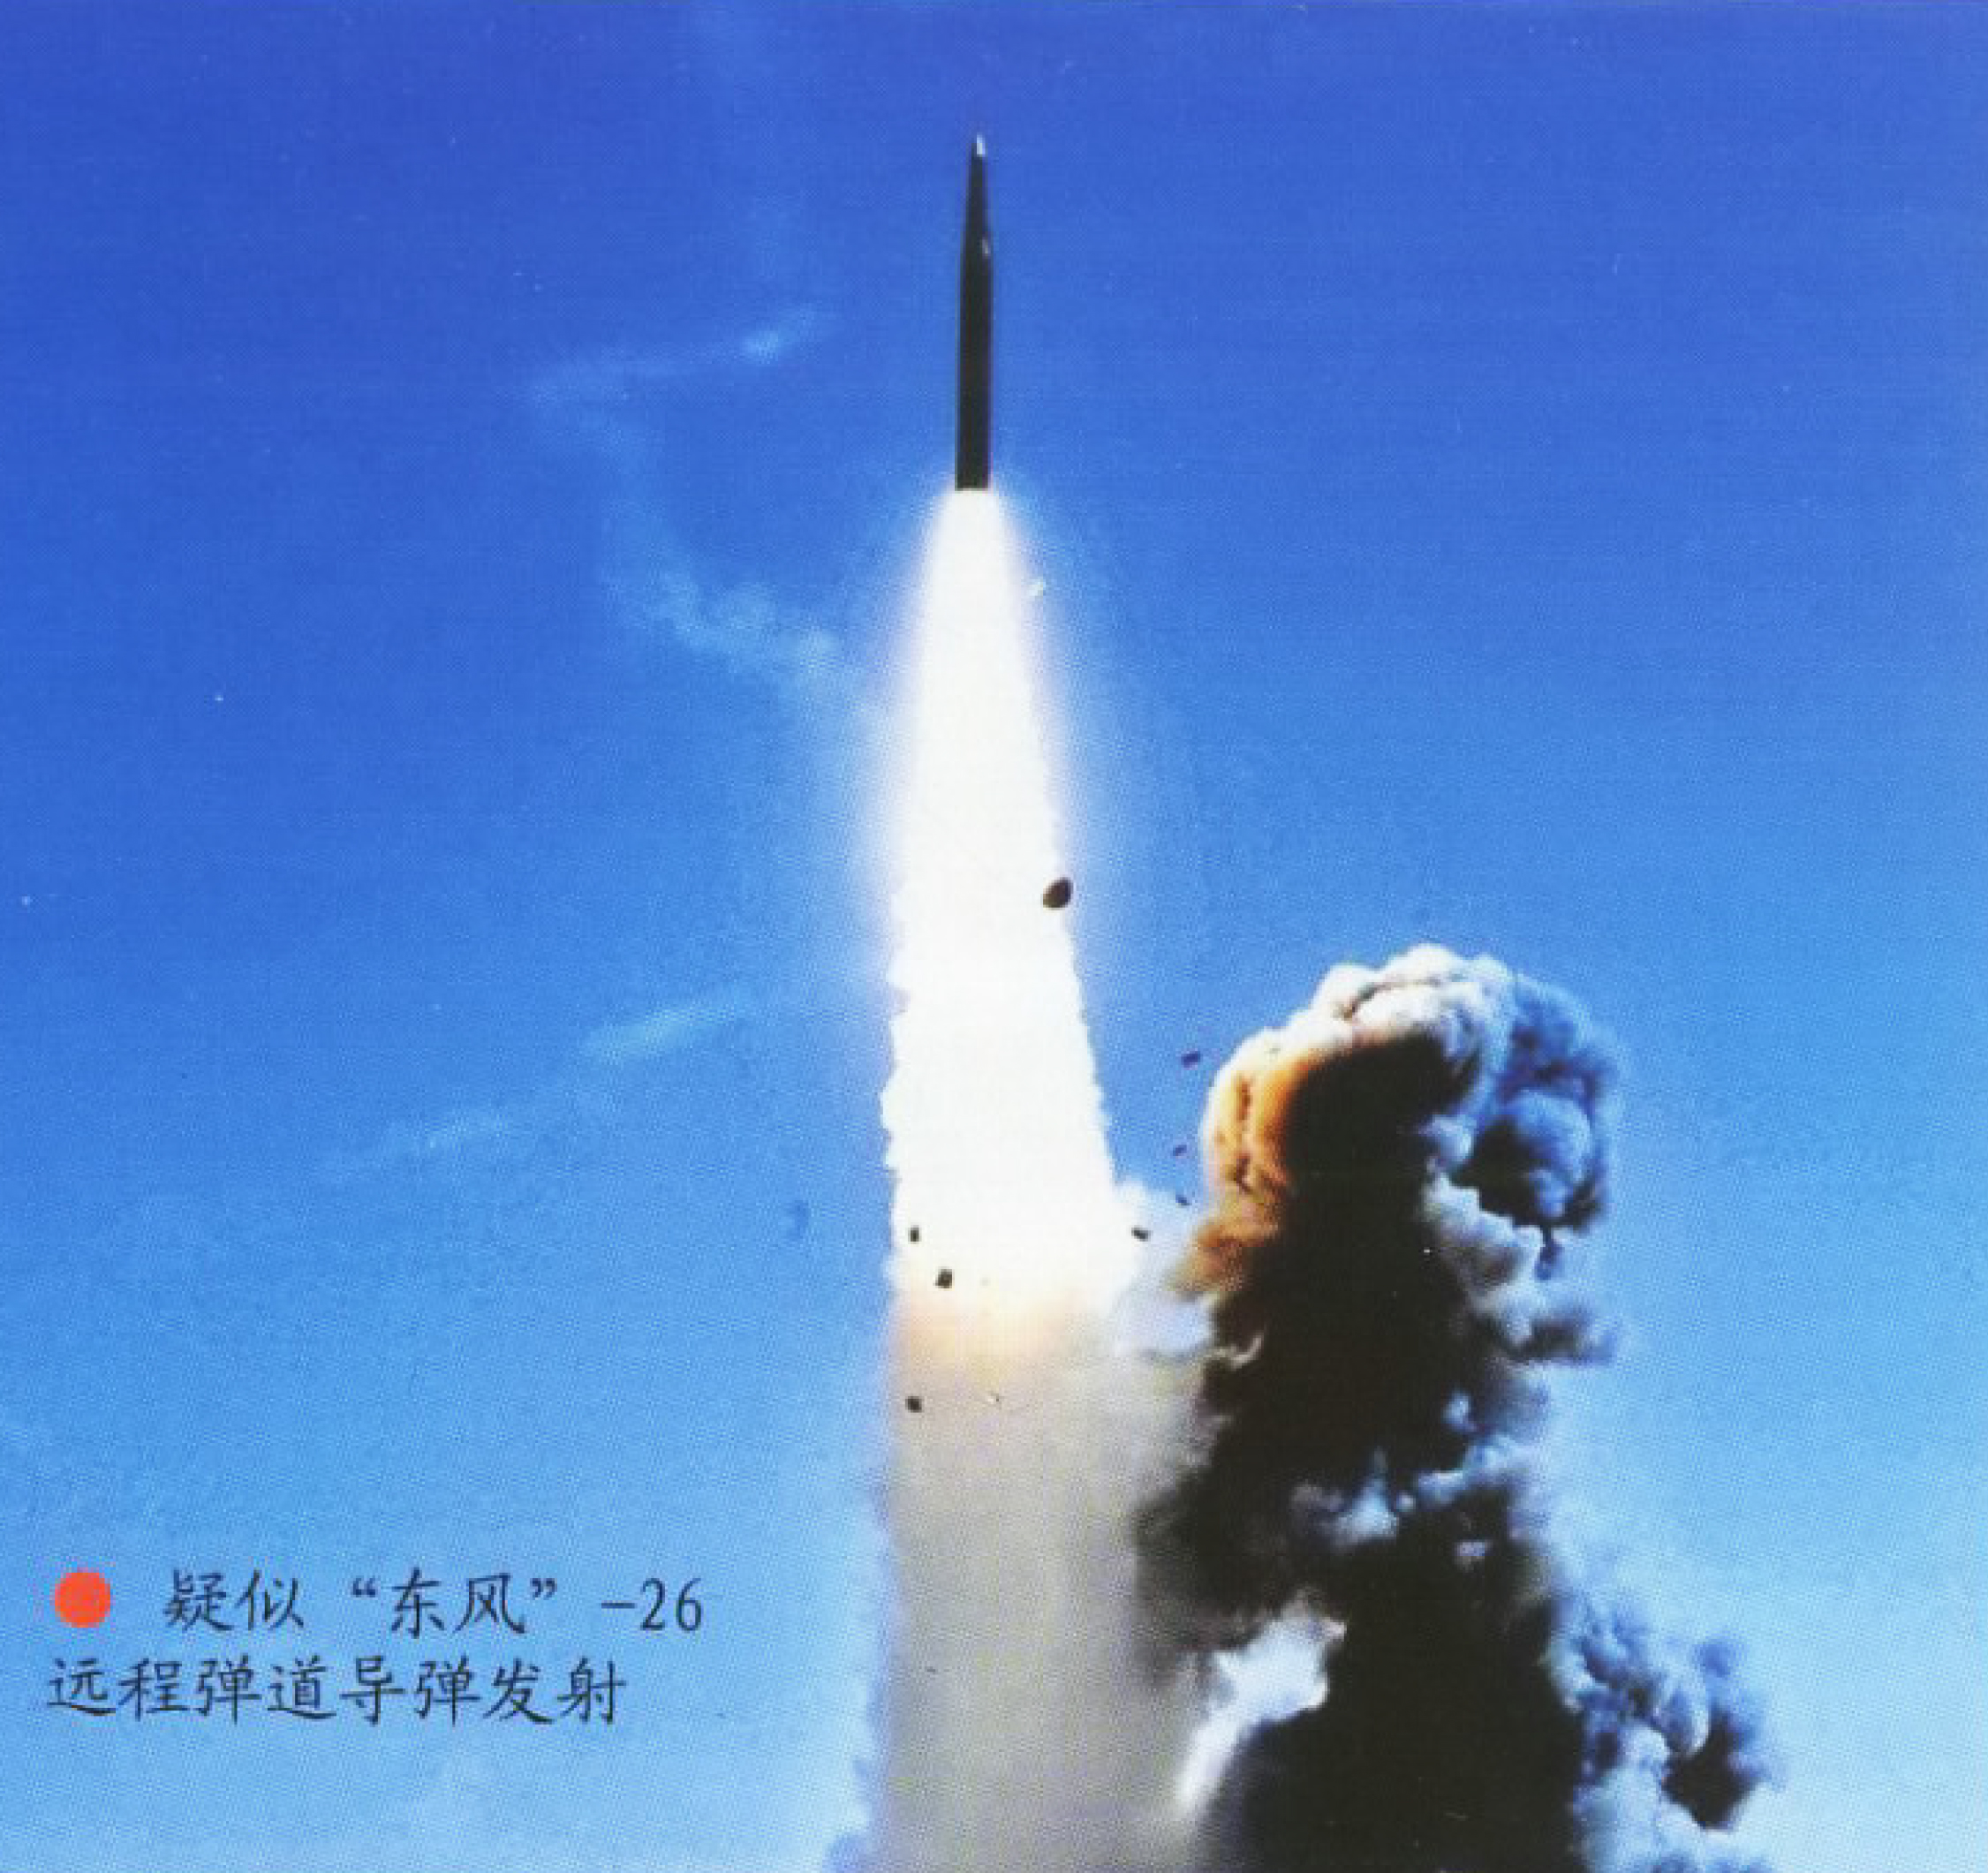 疑似东风-26远程弹道导弹发射照首次曝光,将替换